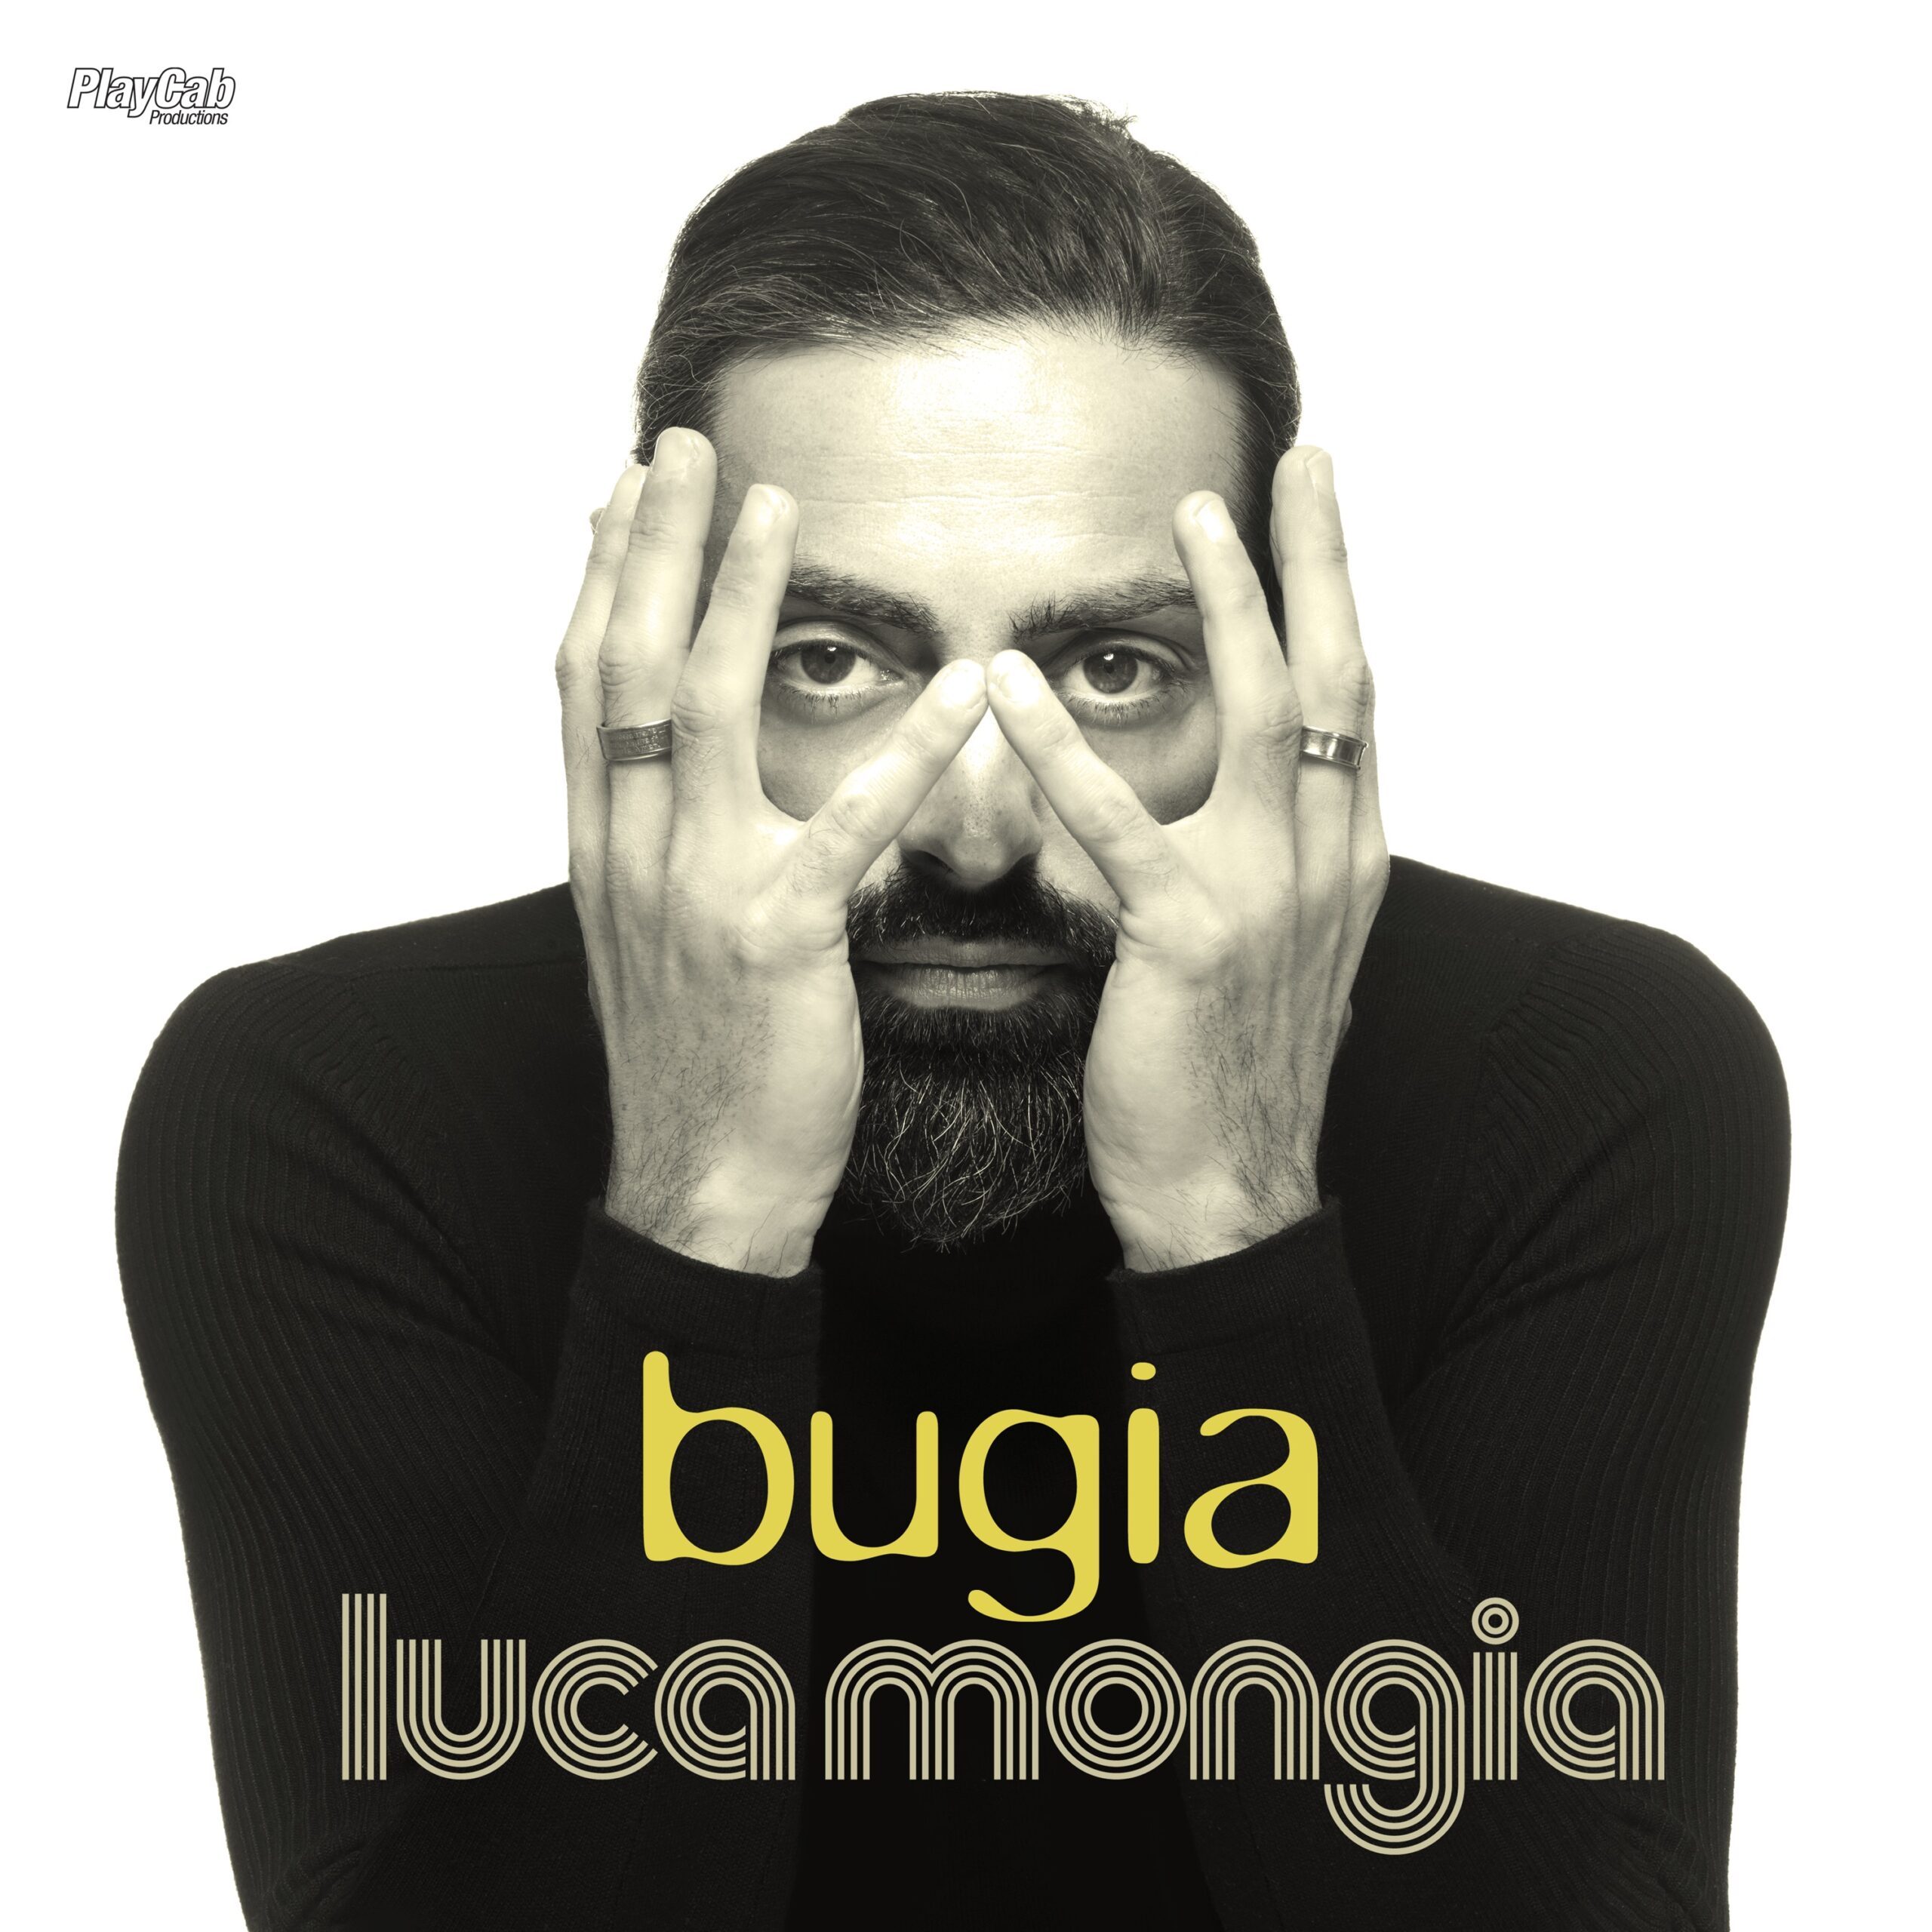 Musica. Da domani esce in versione digitale “Bugie”, il nuovo singolo di Luca Mongia. Dedicato alla strage di Ustica